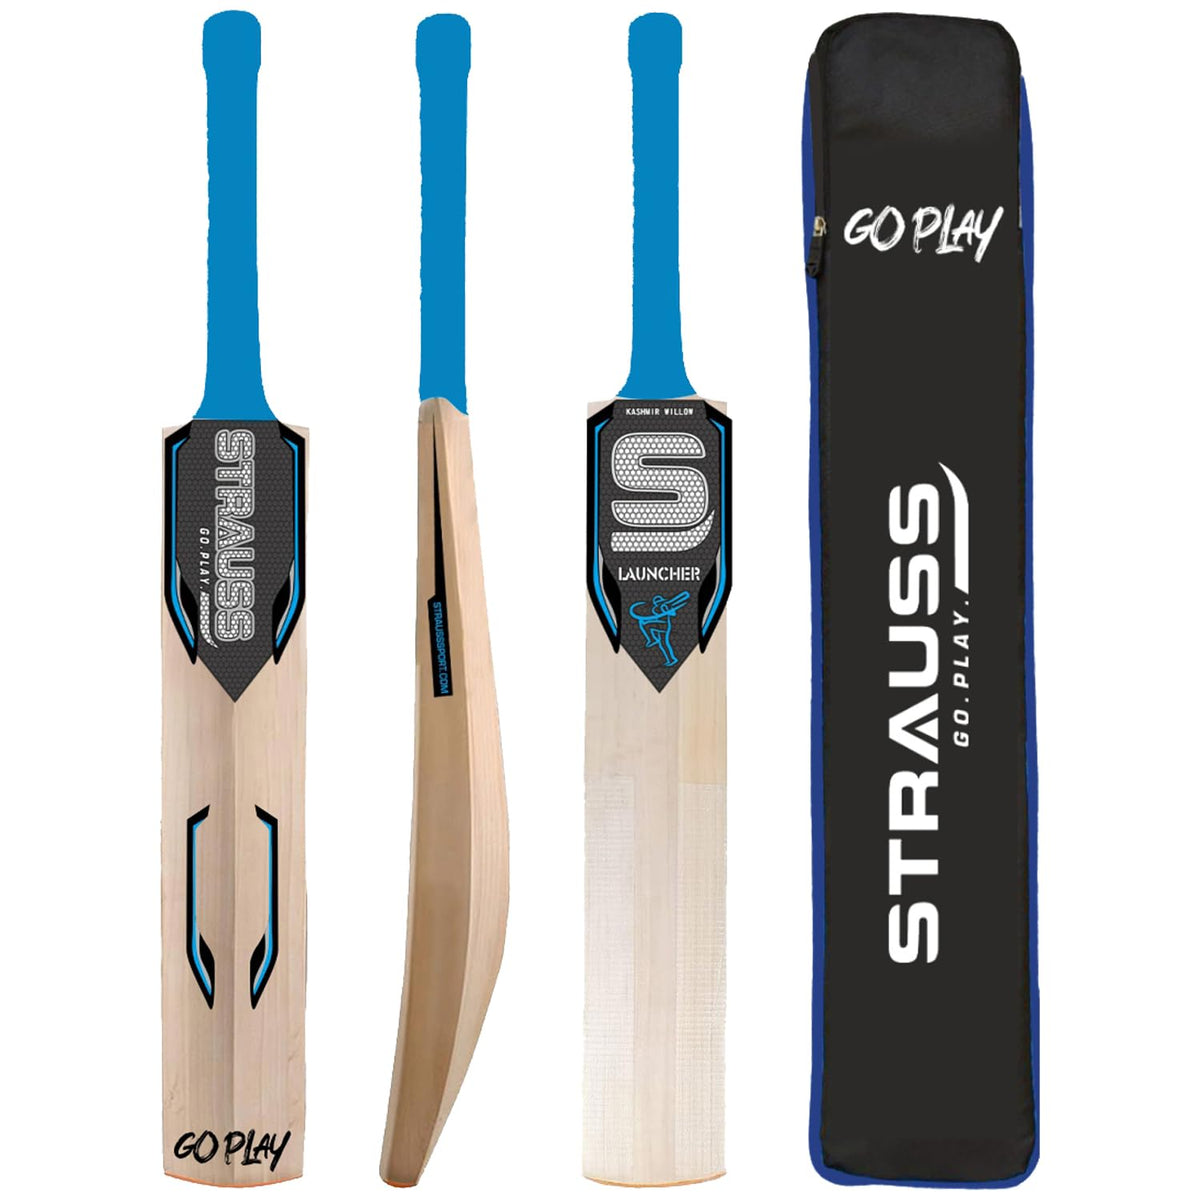 Strauss Launcher Cricket Bat | Kashmir Willow | Cricket Bat with Grip for Gully Cricket & Tournament Match | Standard Tennis Ball Bat for Cricket | Size: 6 (900-1050 Grams)